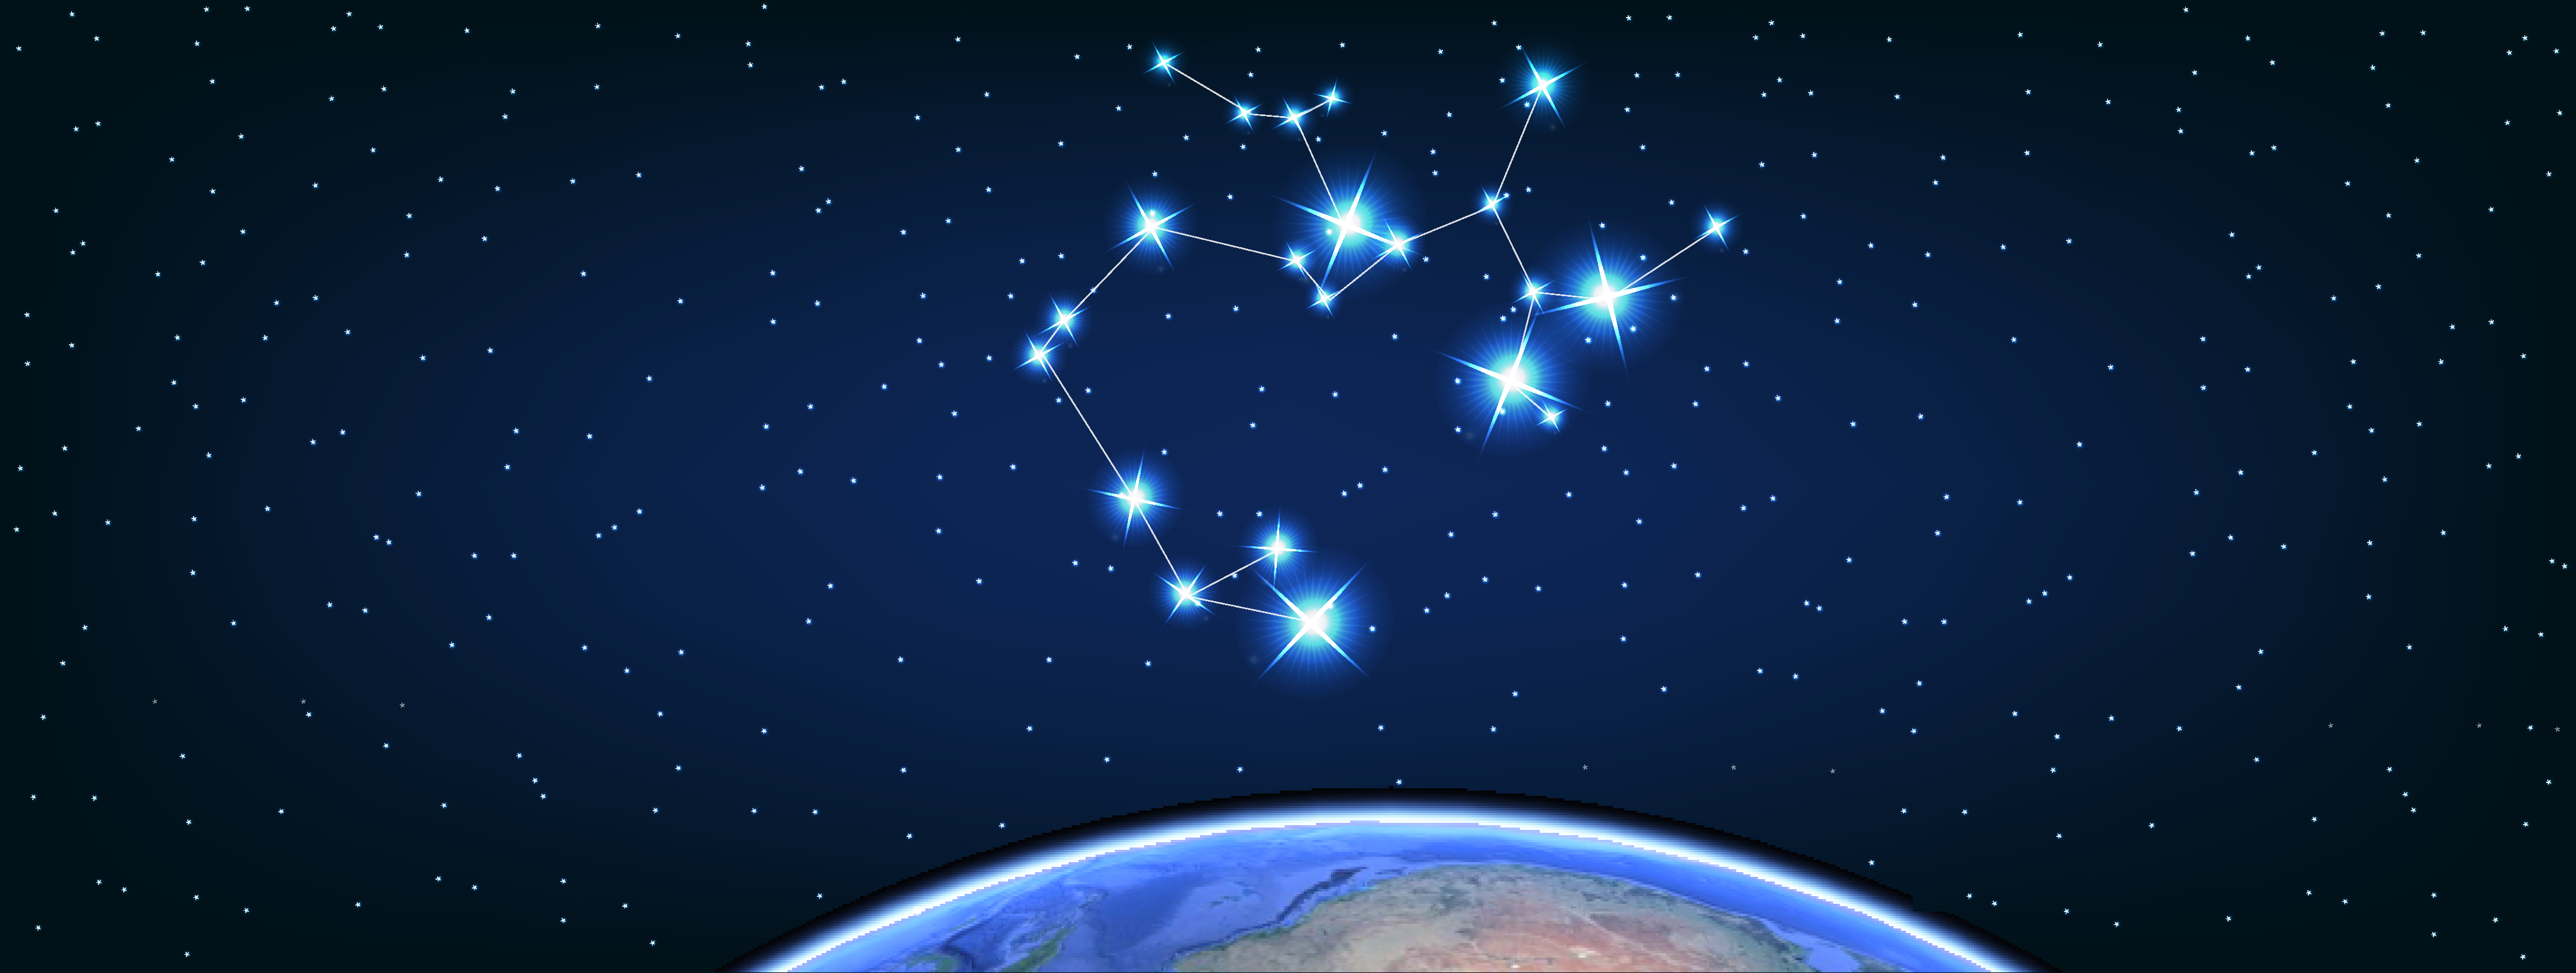 Constellation of Sagittarius